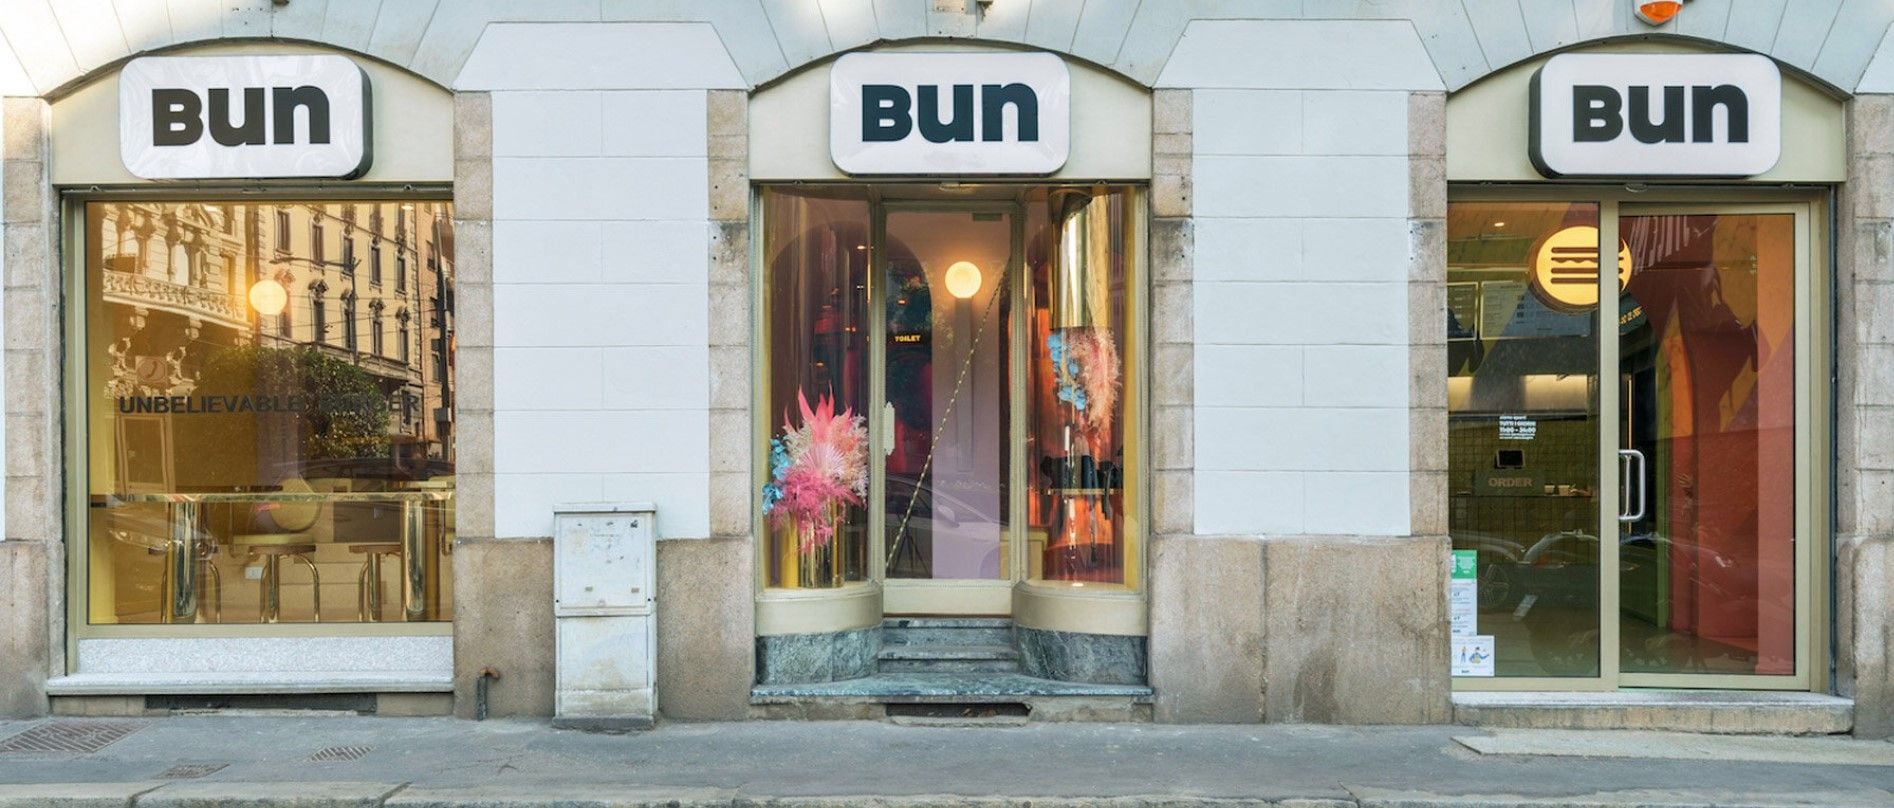 Deceptively simple exterior of the Masquespacio-designed Bun burger restaurant on Milan's Via Dell'Orso.